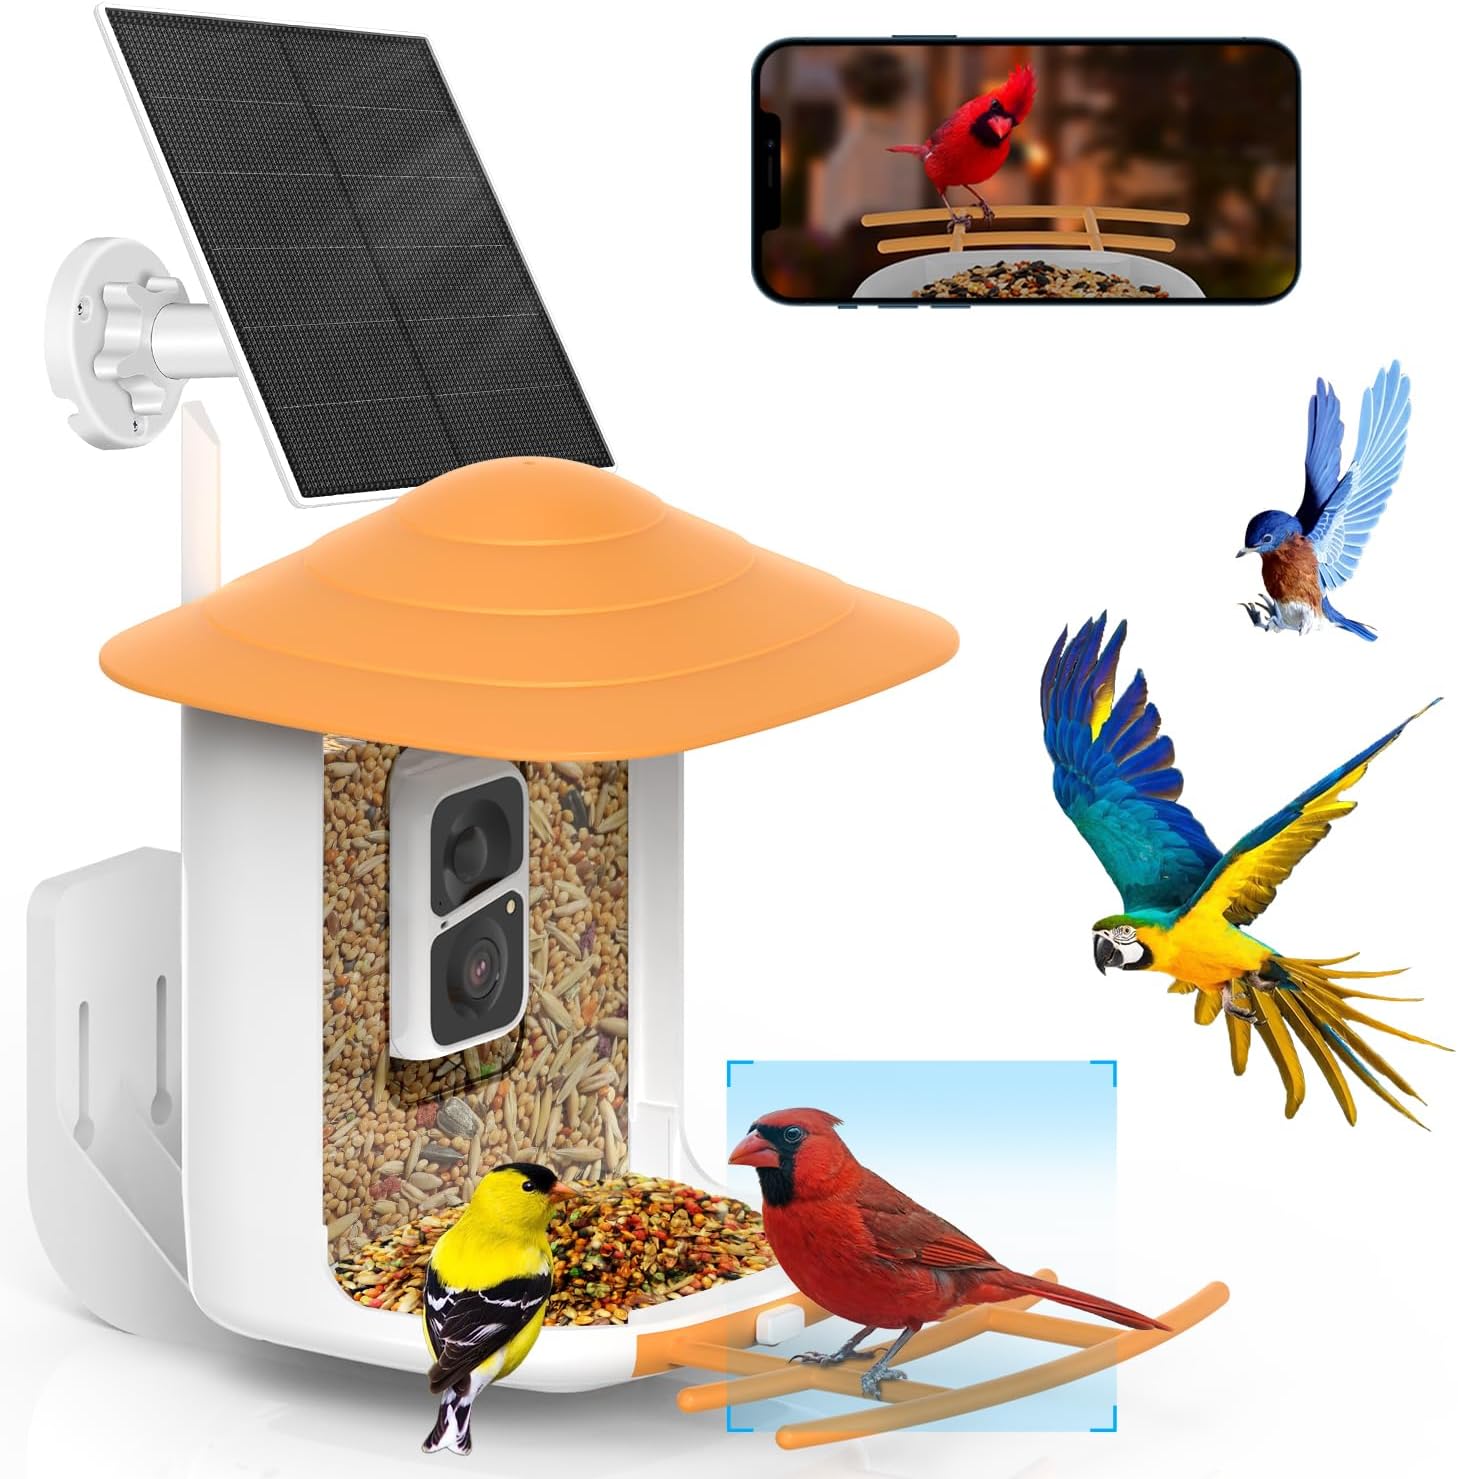 Soliom BF10 BF08 BF09 bird feeder camera 5W solar panel only also suitable for BF09 bird feeder camera